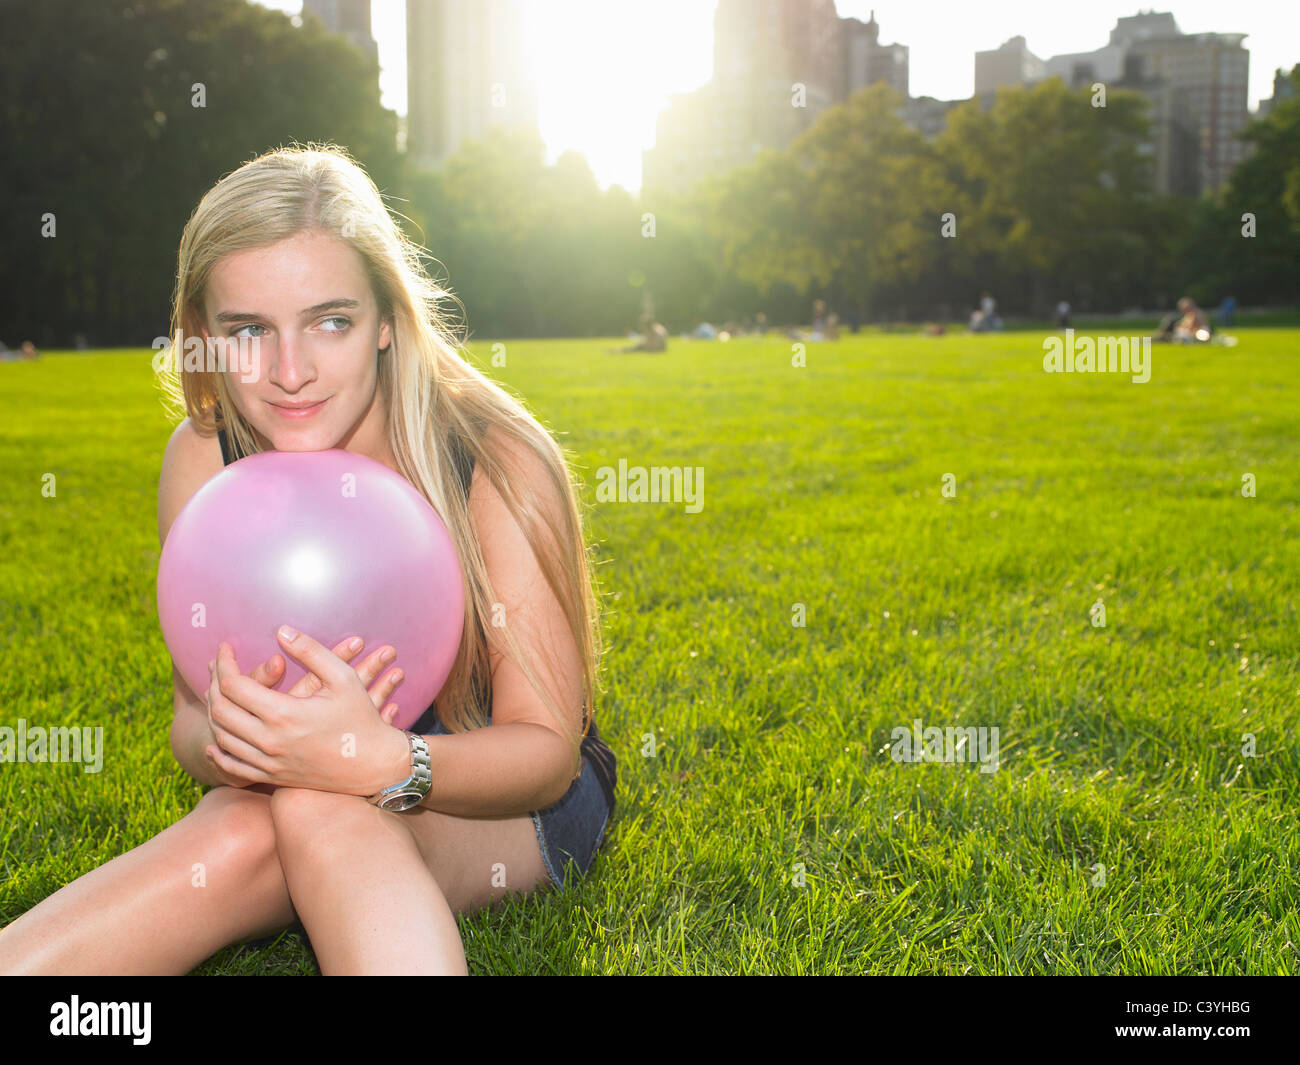 Frau spielt mit einem Ballon in einem park Stockfoto